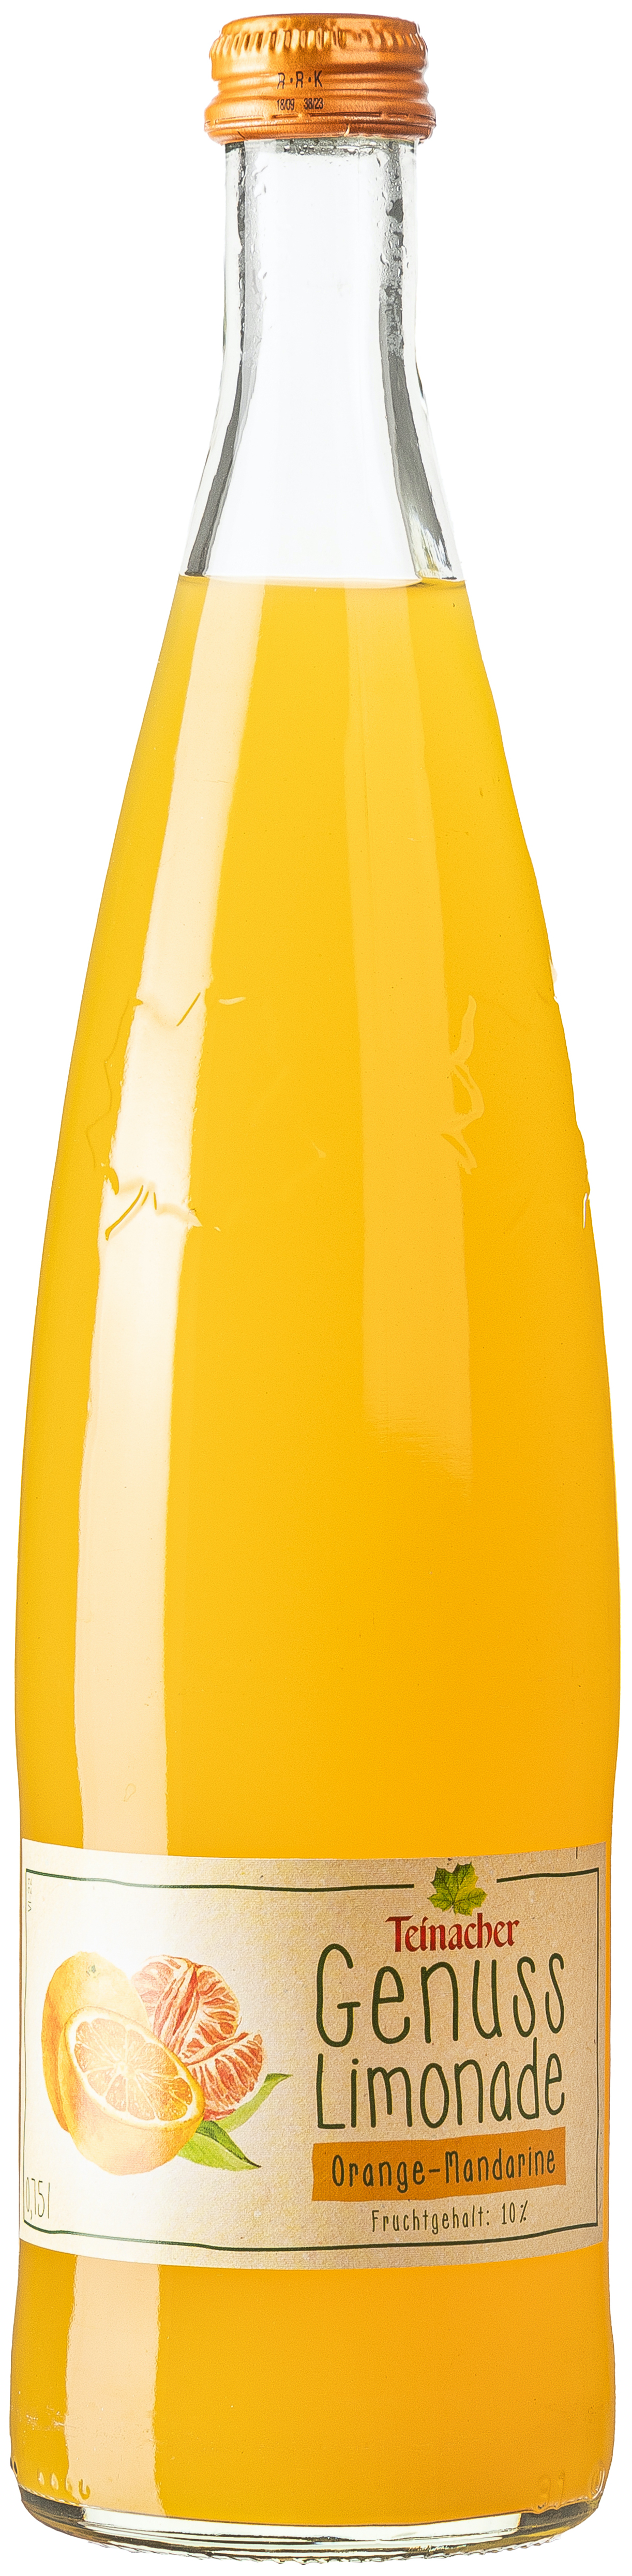 Teinacher Genuss Limonade Orange Mandarine 0,75L MEHRWEG